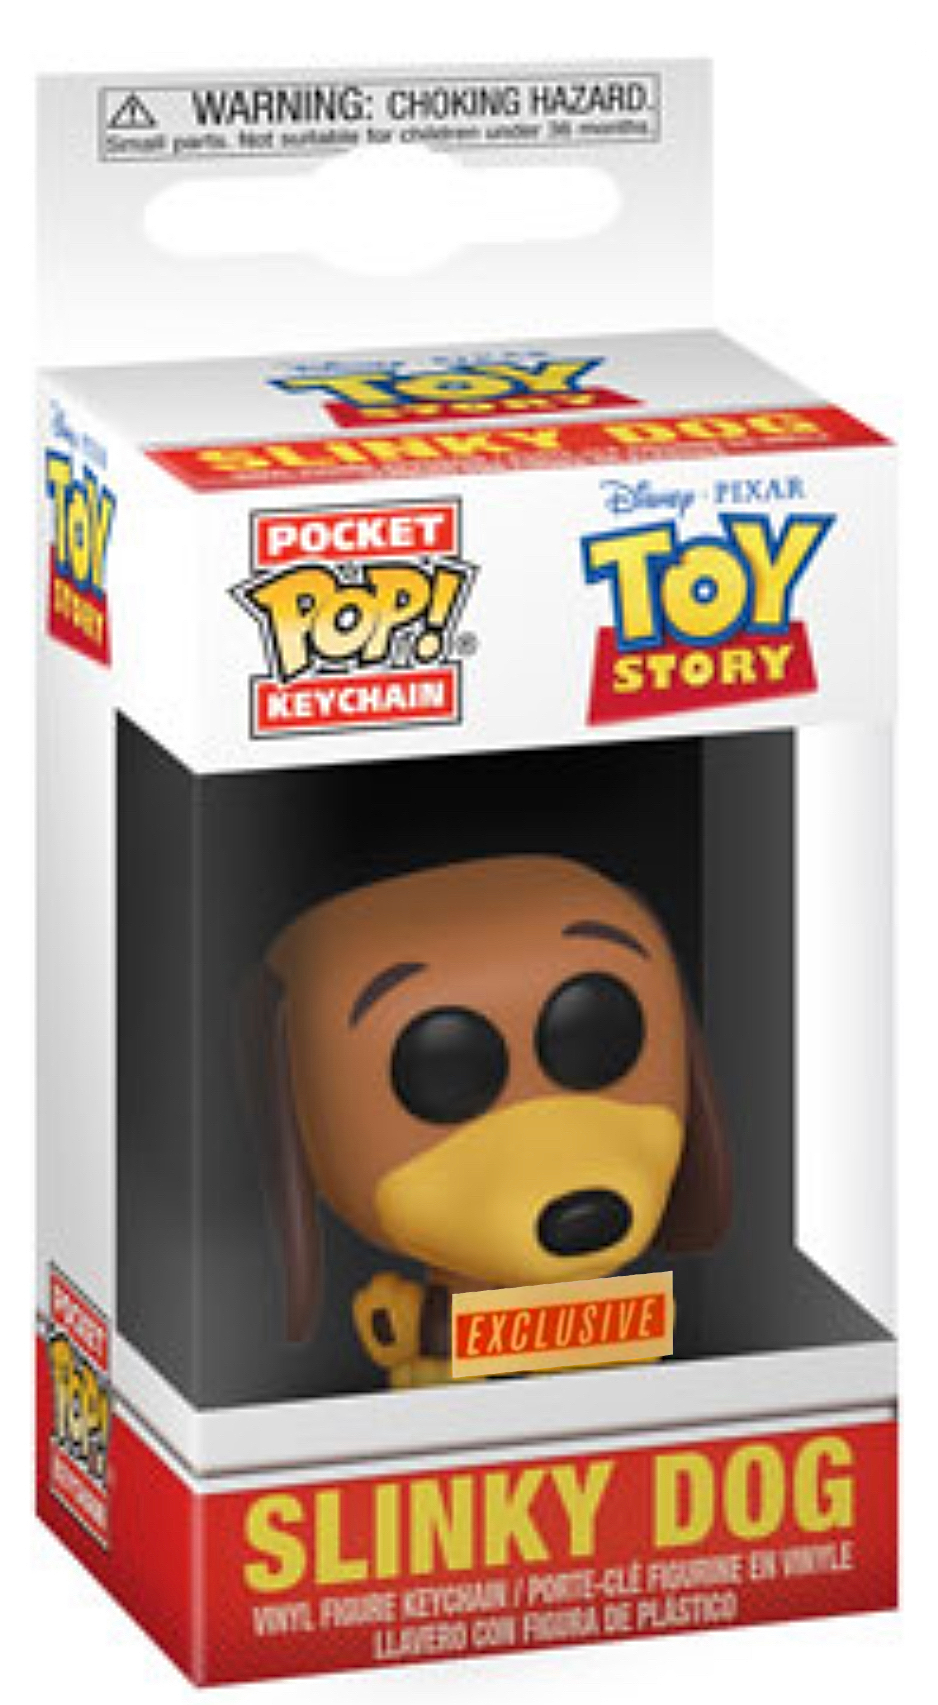 FunKo POP! Keychain, Toy Story Woody 